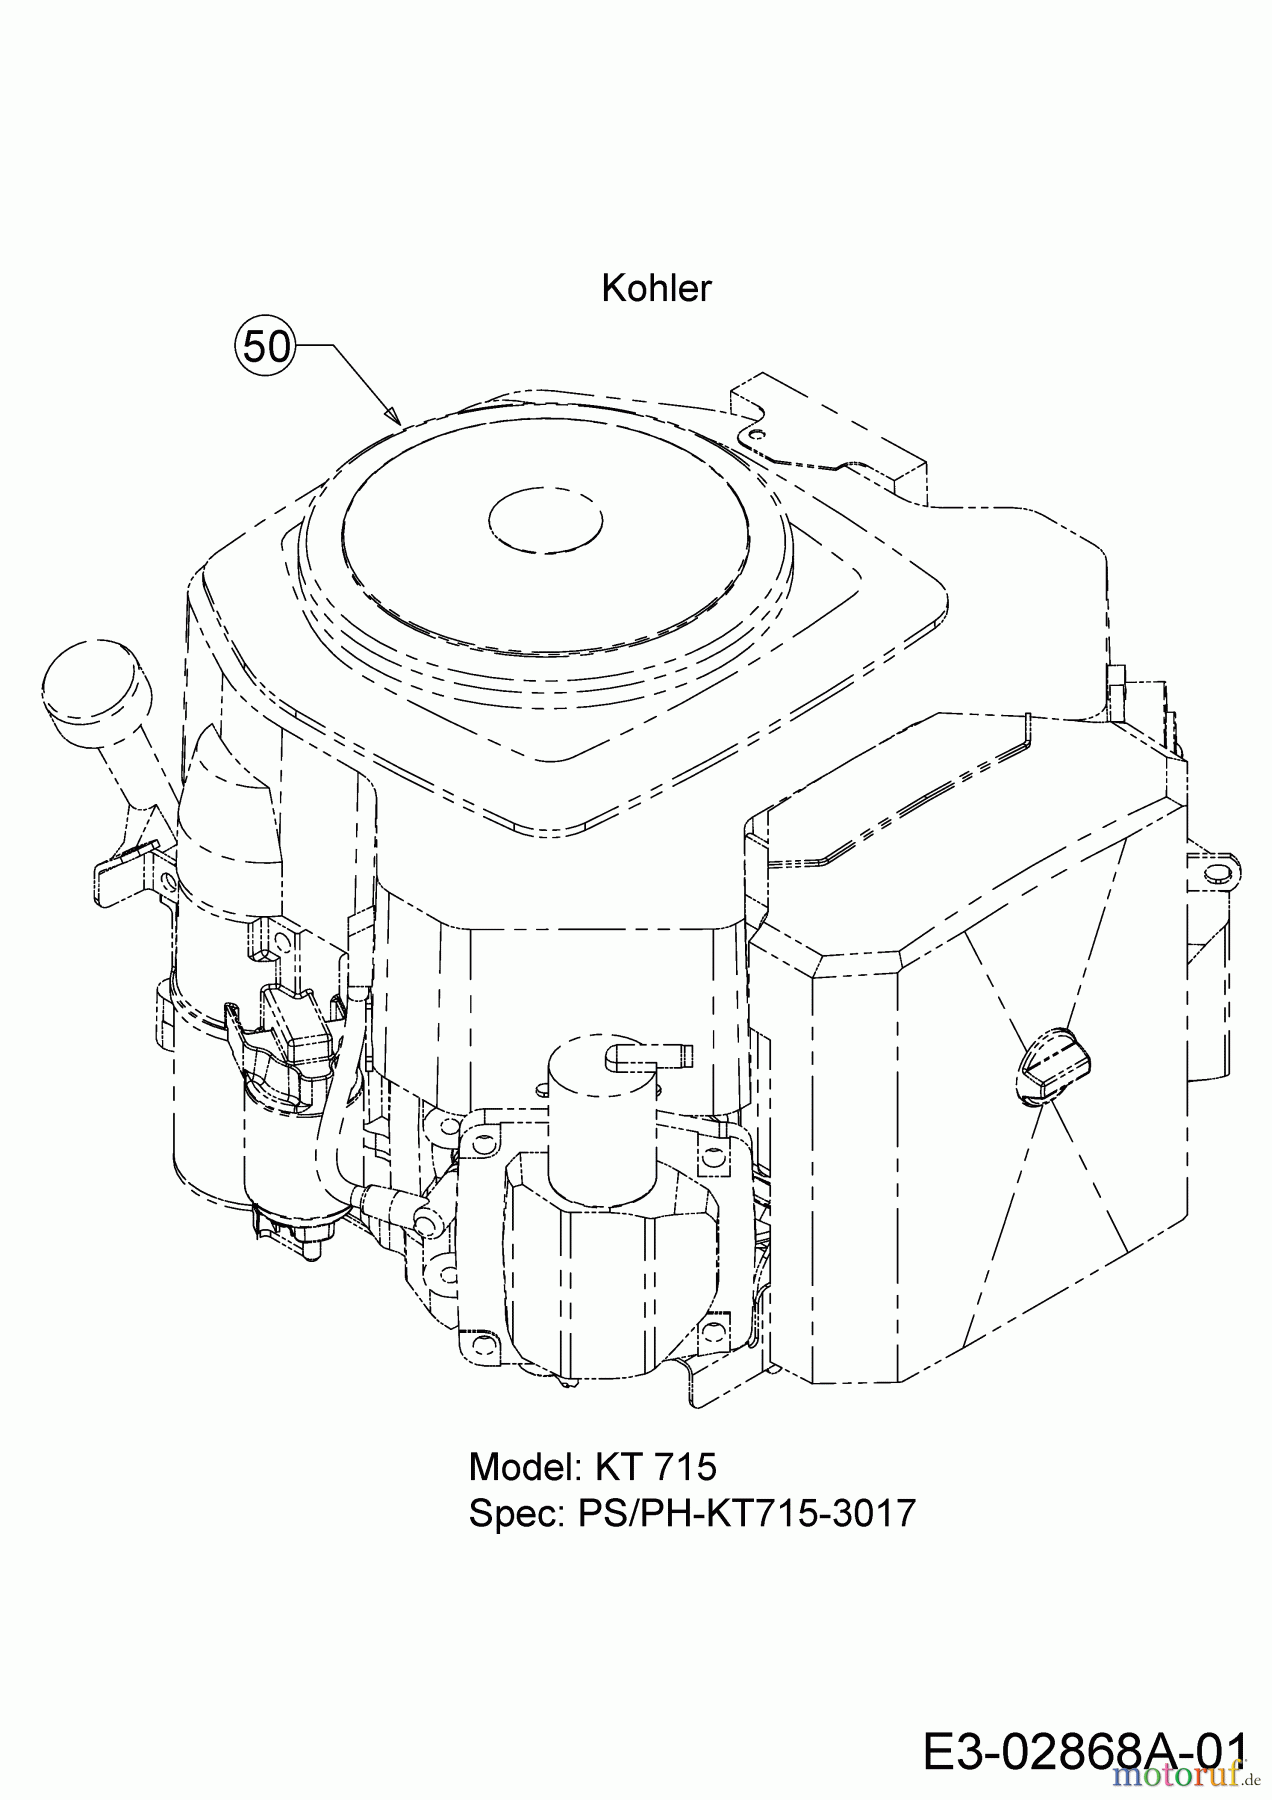  Wolf-Garten Rasentraktoren Expert 107.200 H 13AP93WS350  (2015) Motor Kohler